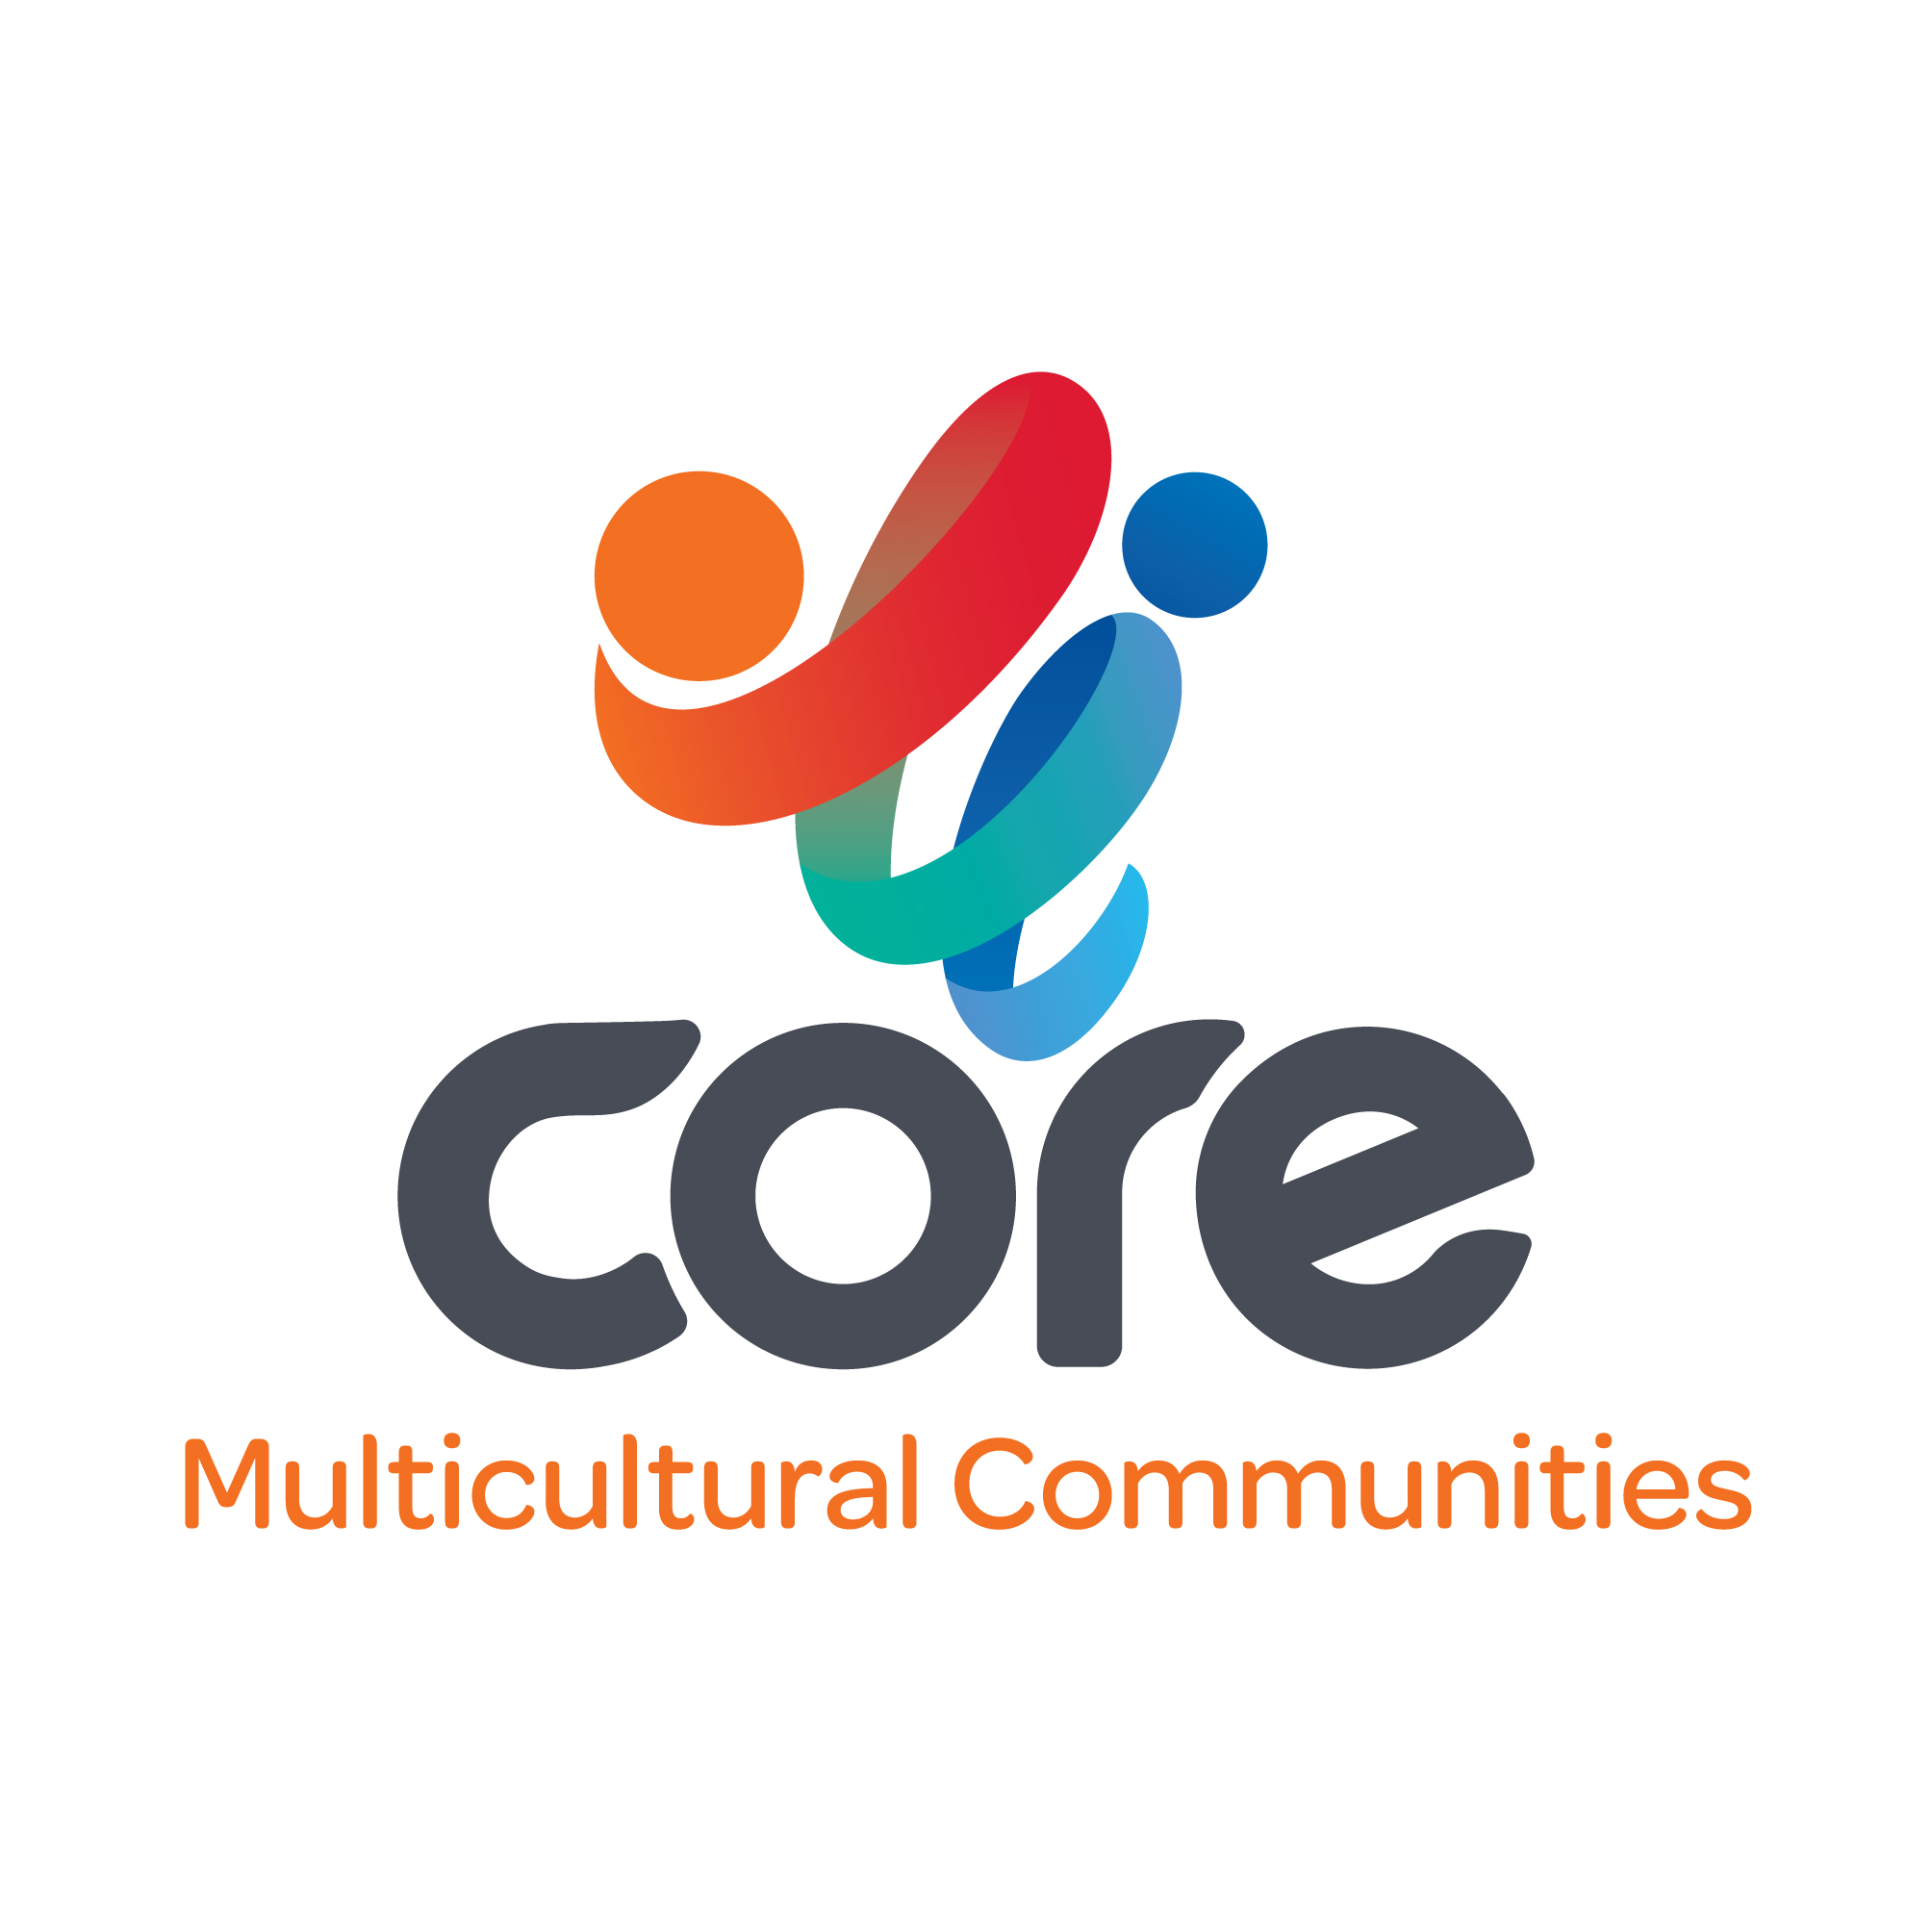 SUBLOGO-CORE-MulticulturalCommunities.jpg